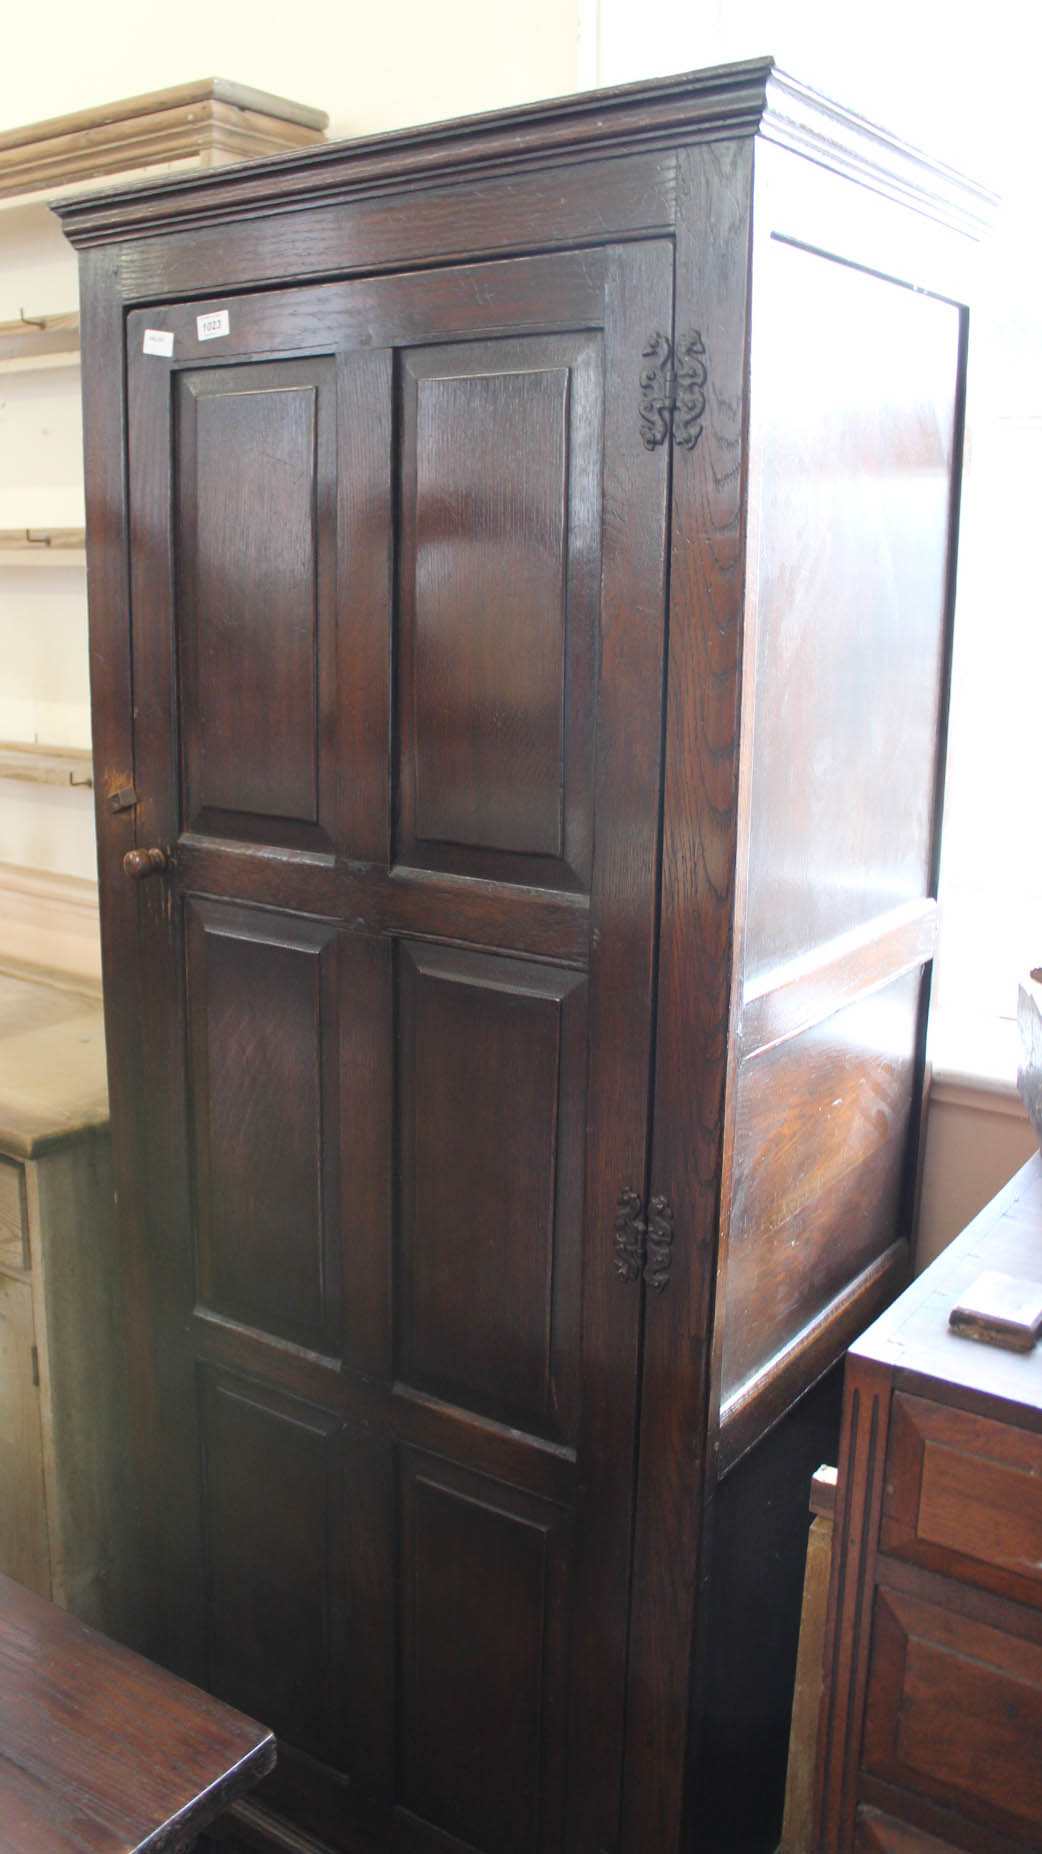 A 1920's oak one door cupboard